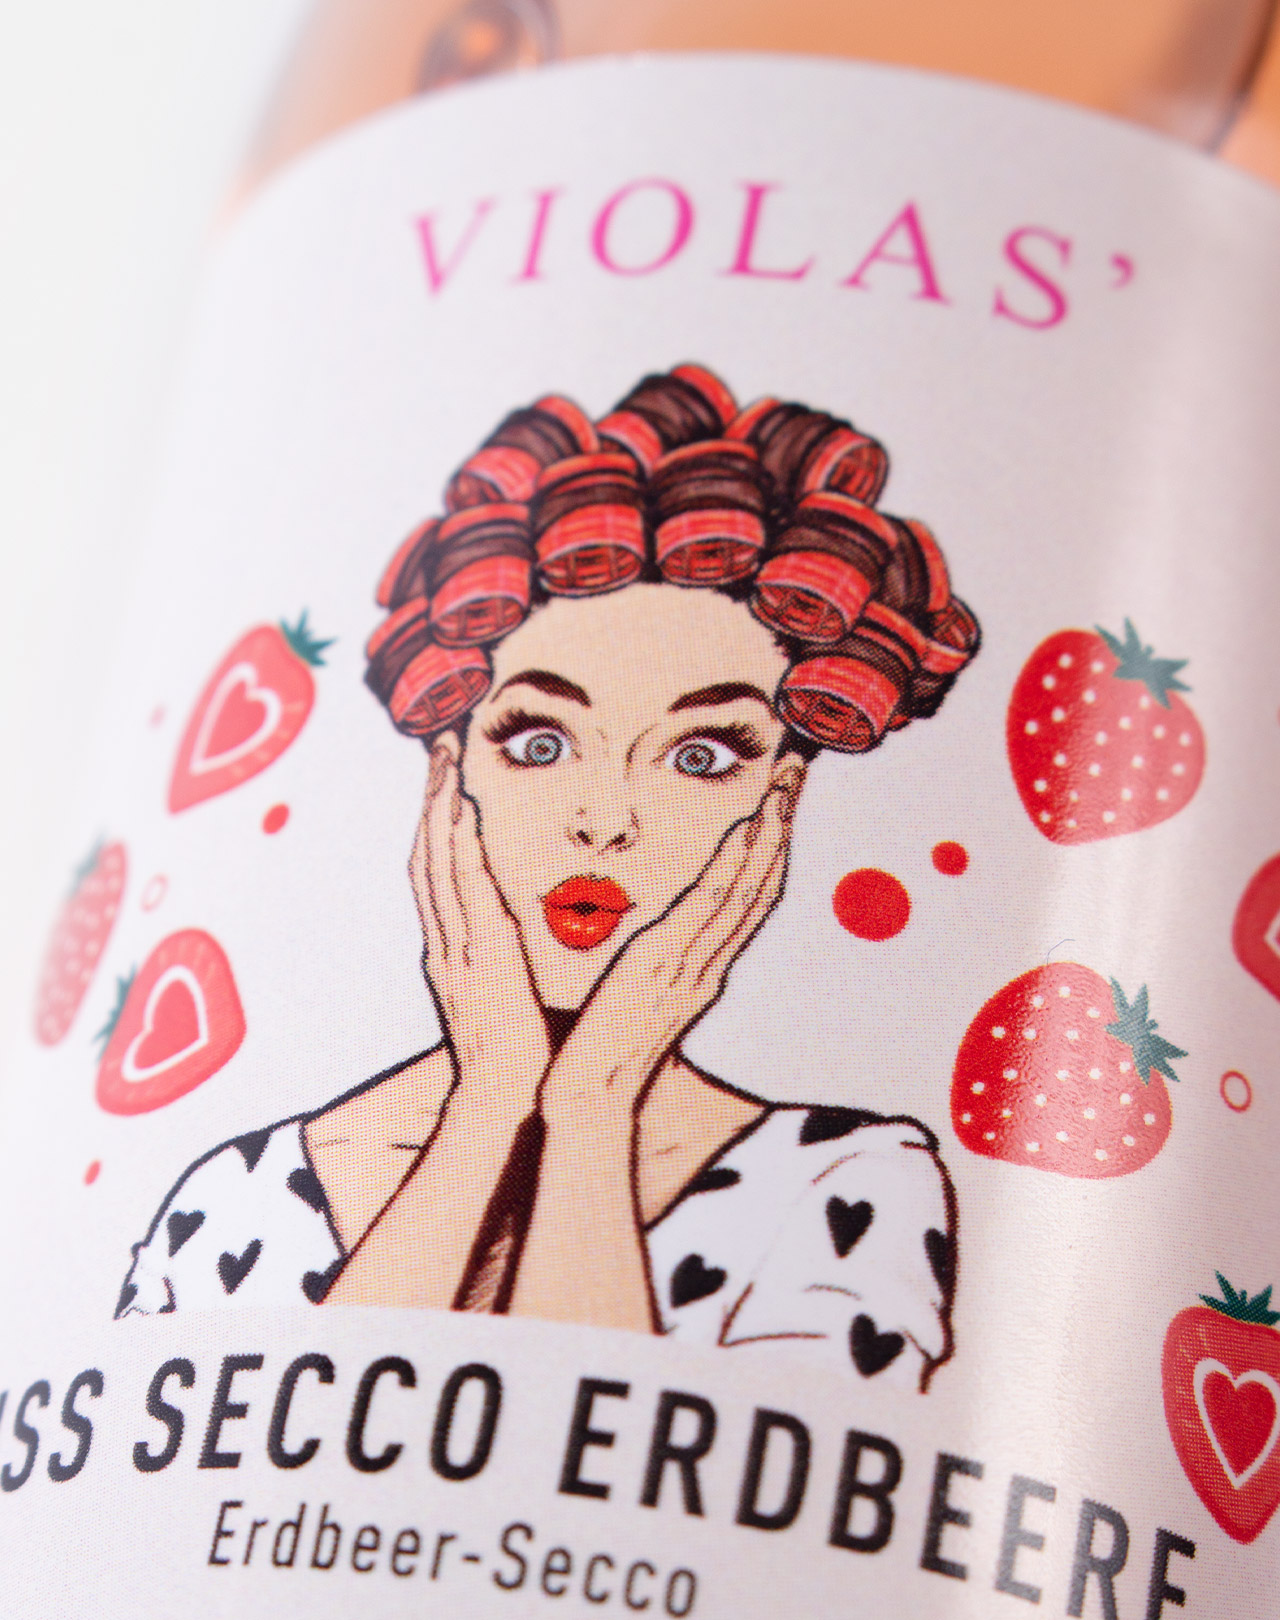 VIOLAS’ Miss Secco Erdbeere